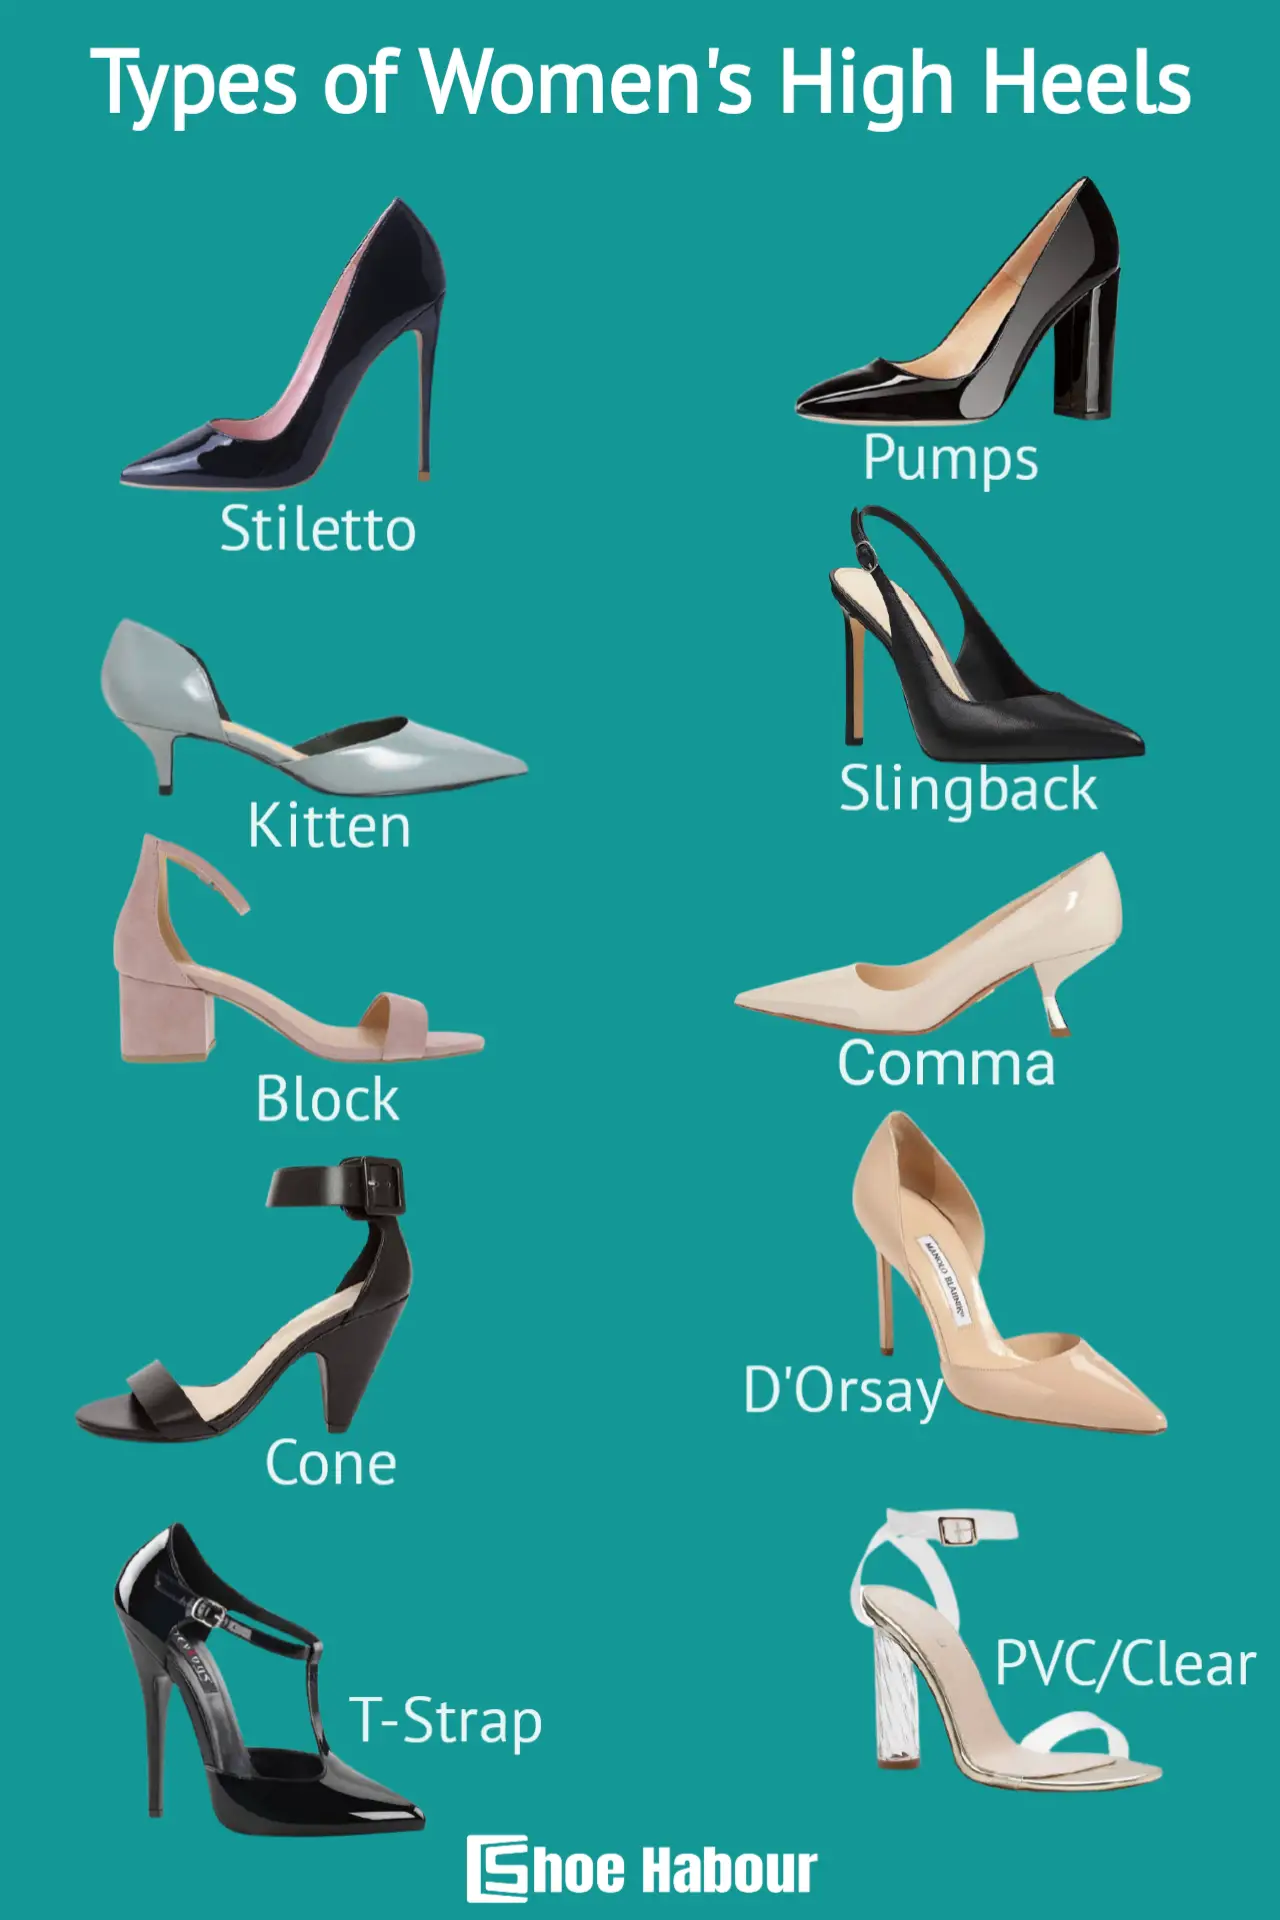 Types of women's high heel shoes